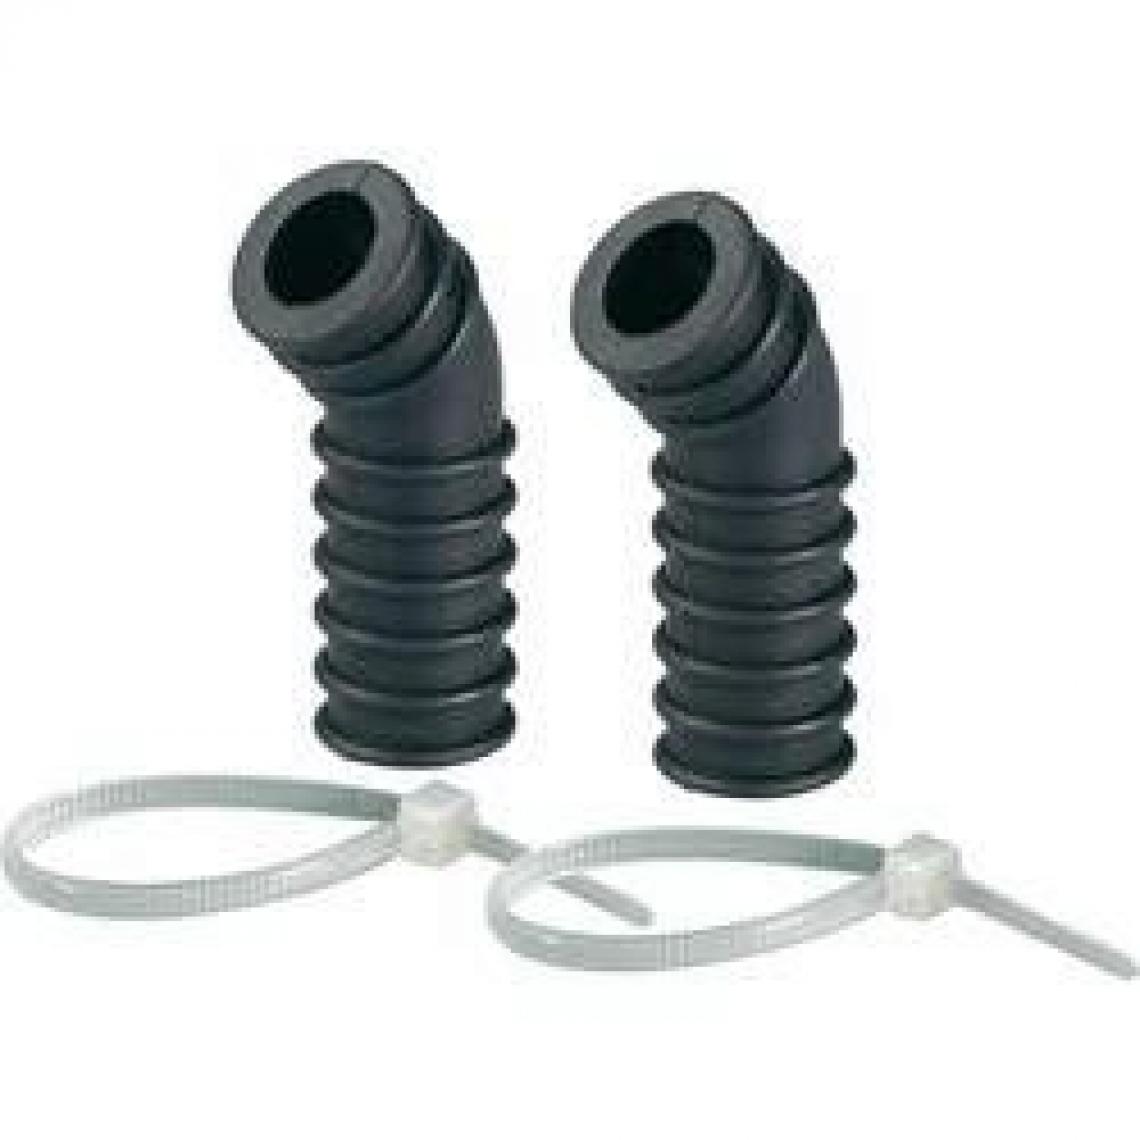 Inconnu - Adaptateurs de filtre à air en silicone noir REELY 1/10e GS-A10BK - Accessoires et pièces